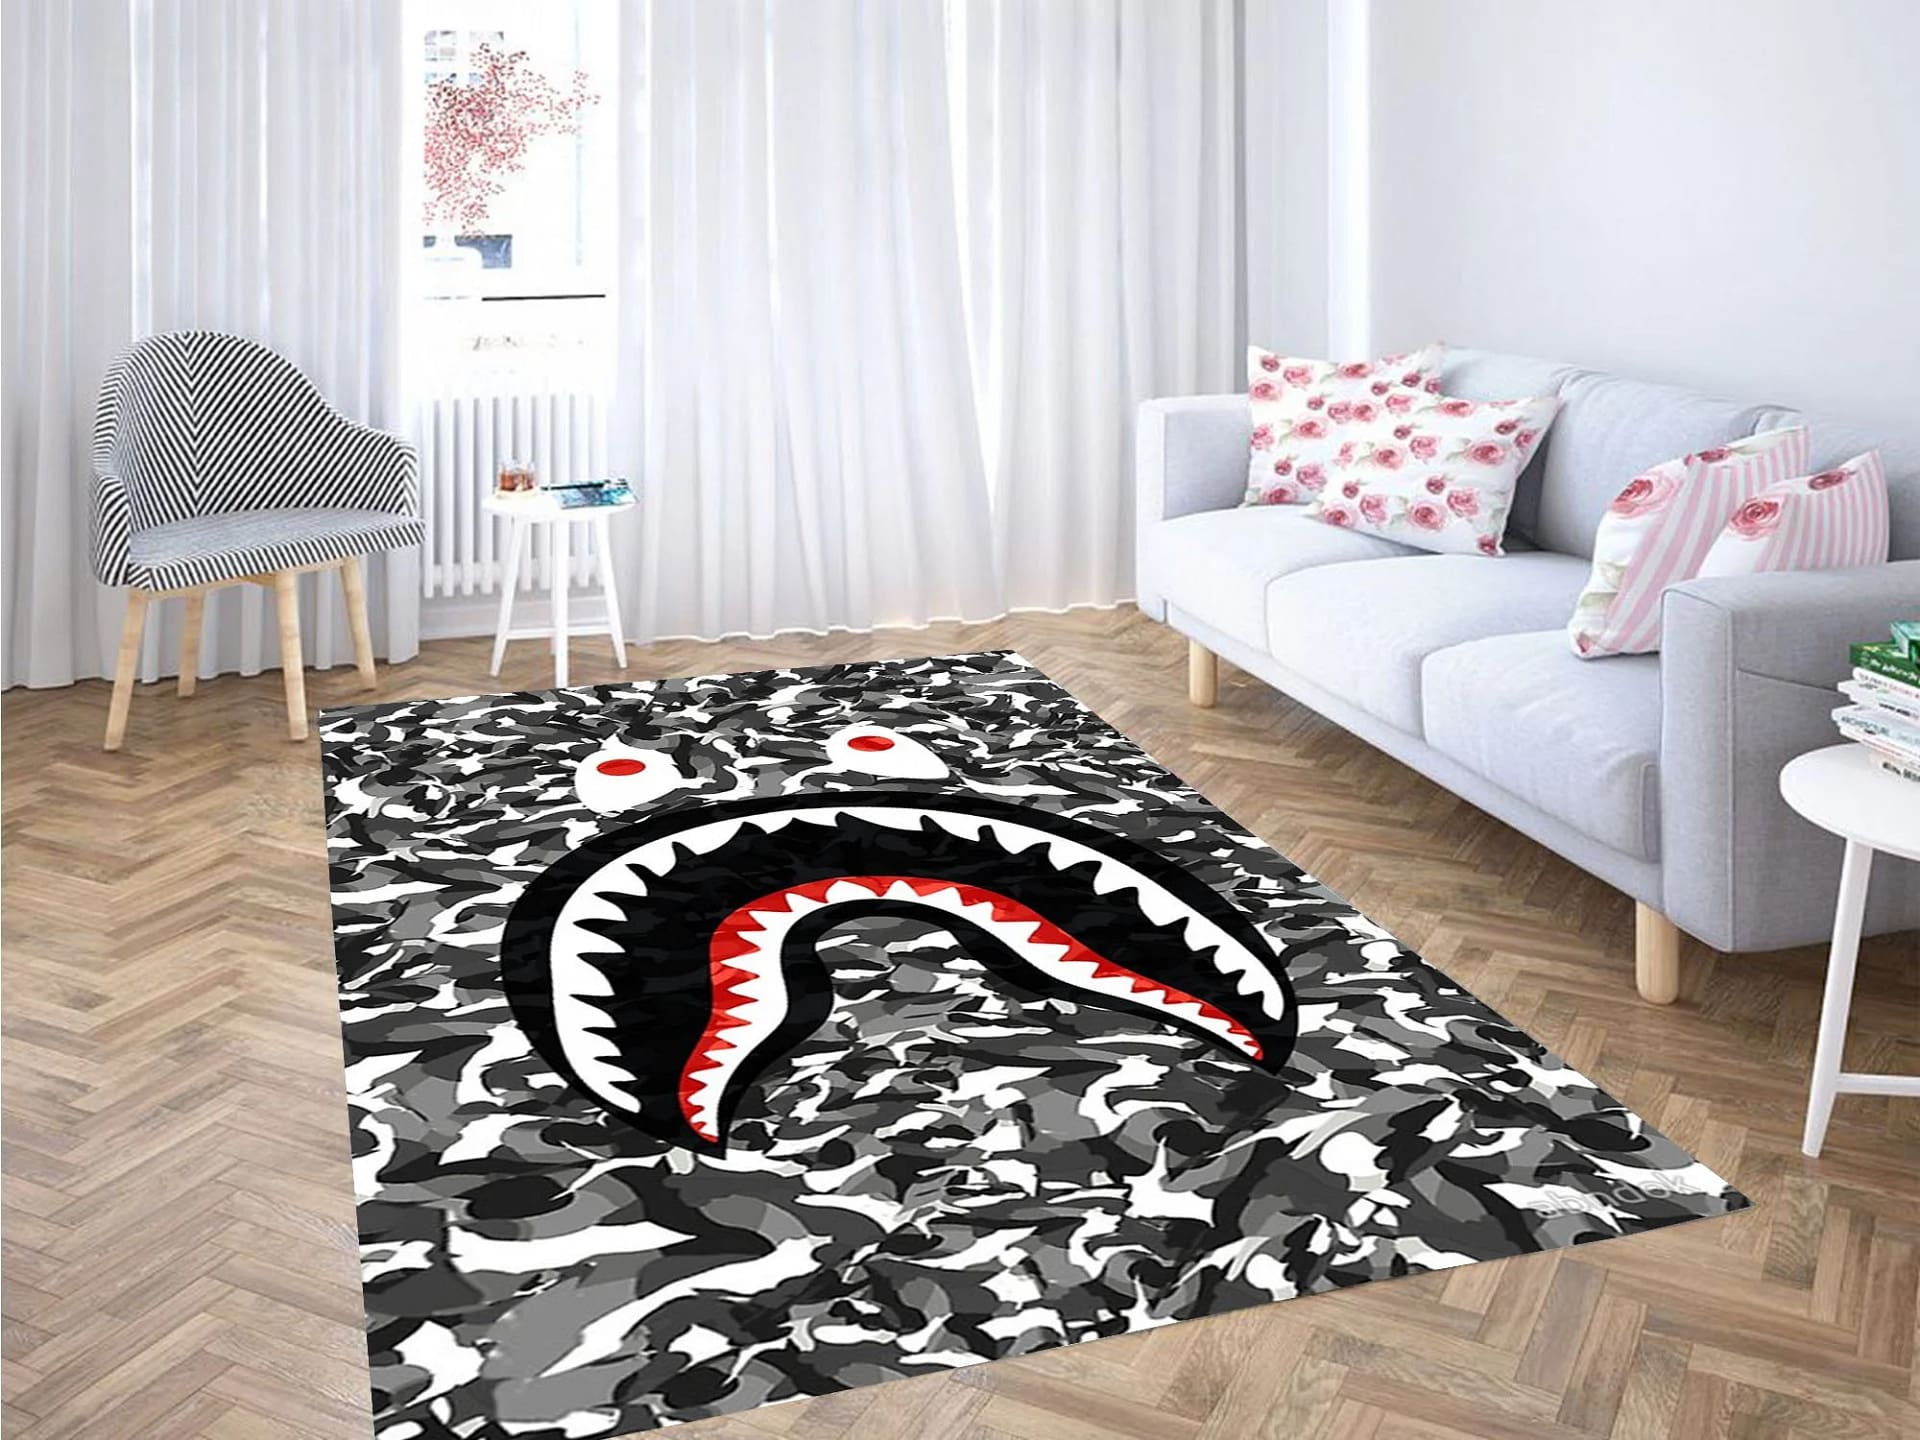 Bape Shark Black Army Pattern Carpet Rug